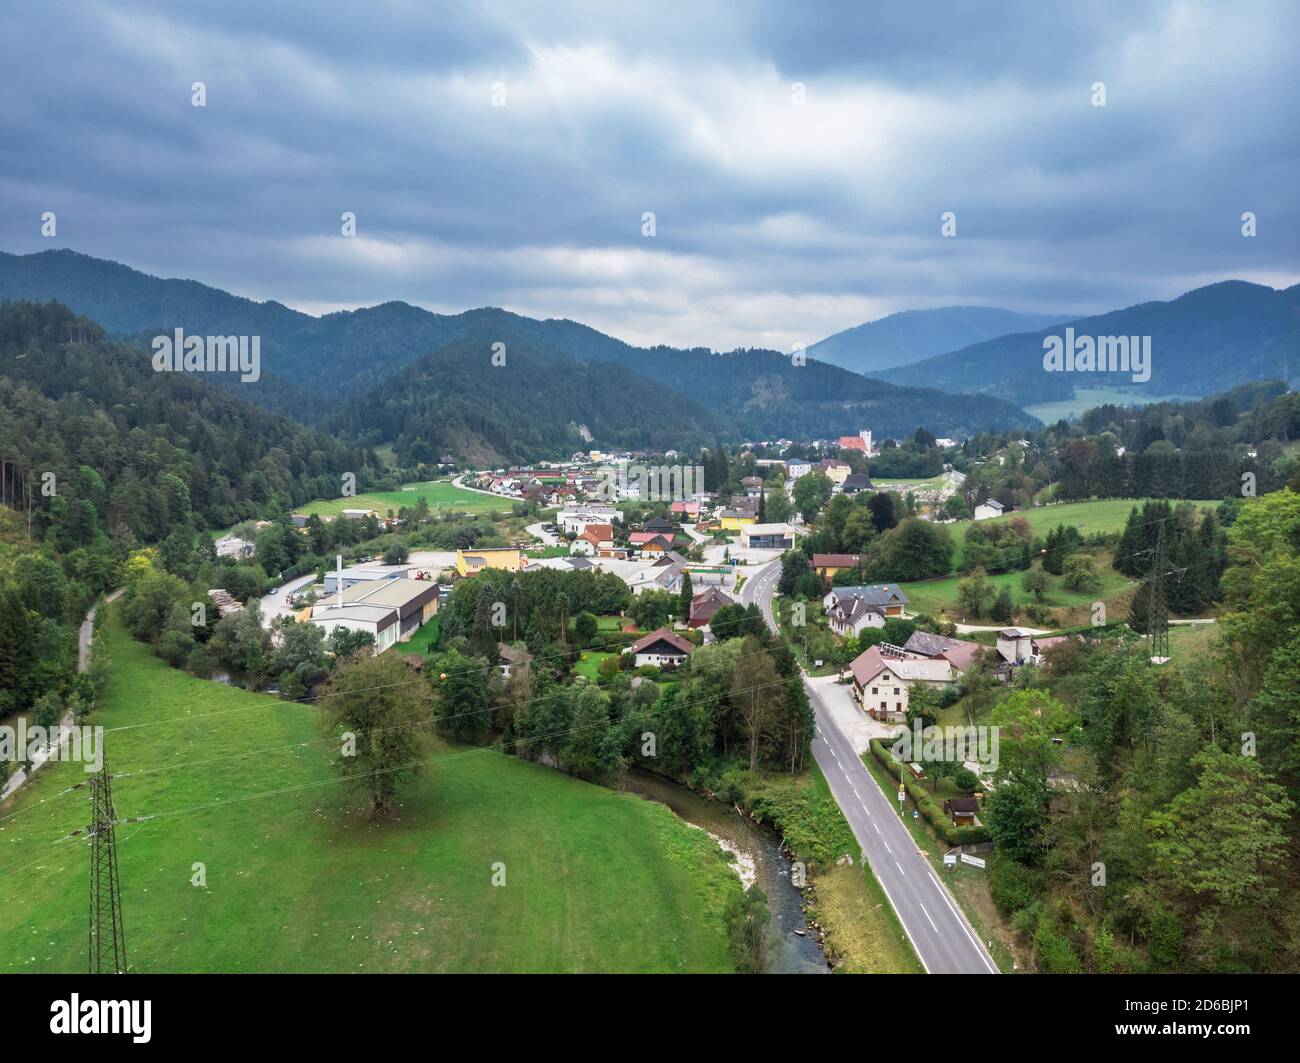 Splendida vista panoramica della piccola città situata tra le colline e le montagne della bassa Austria. Foto vista dall'alto scattata sul drone. Foto Stock